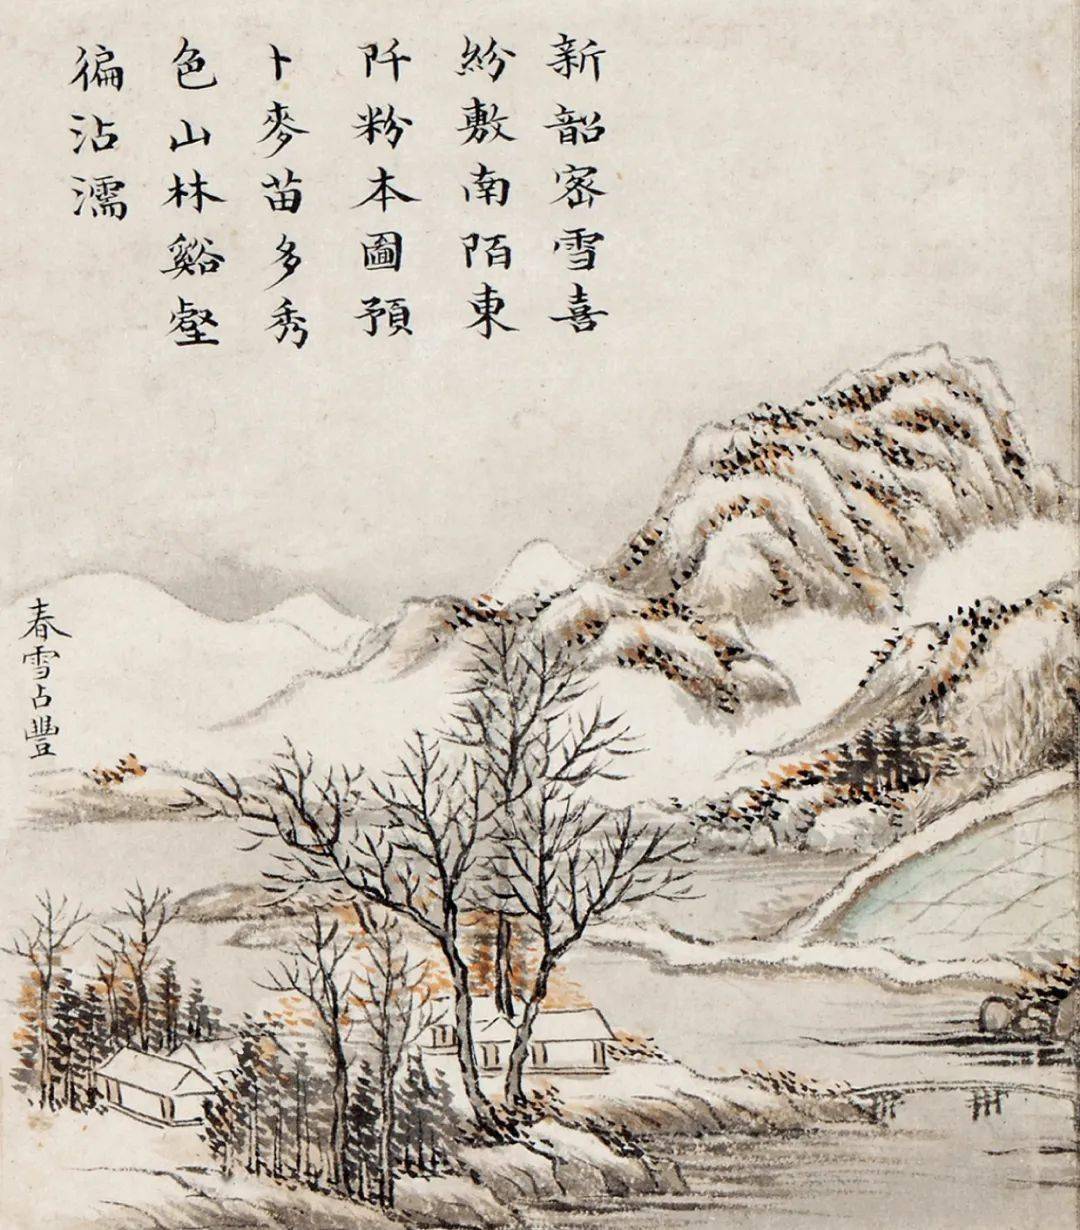 清代画家黄钺的《四春图》即是以春为主题的山水画四开册页,其外装为